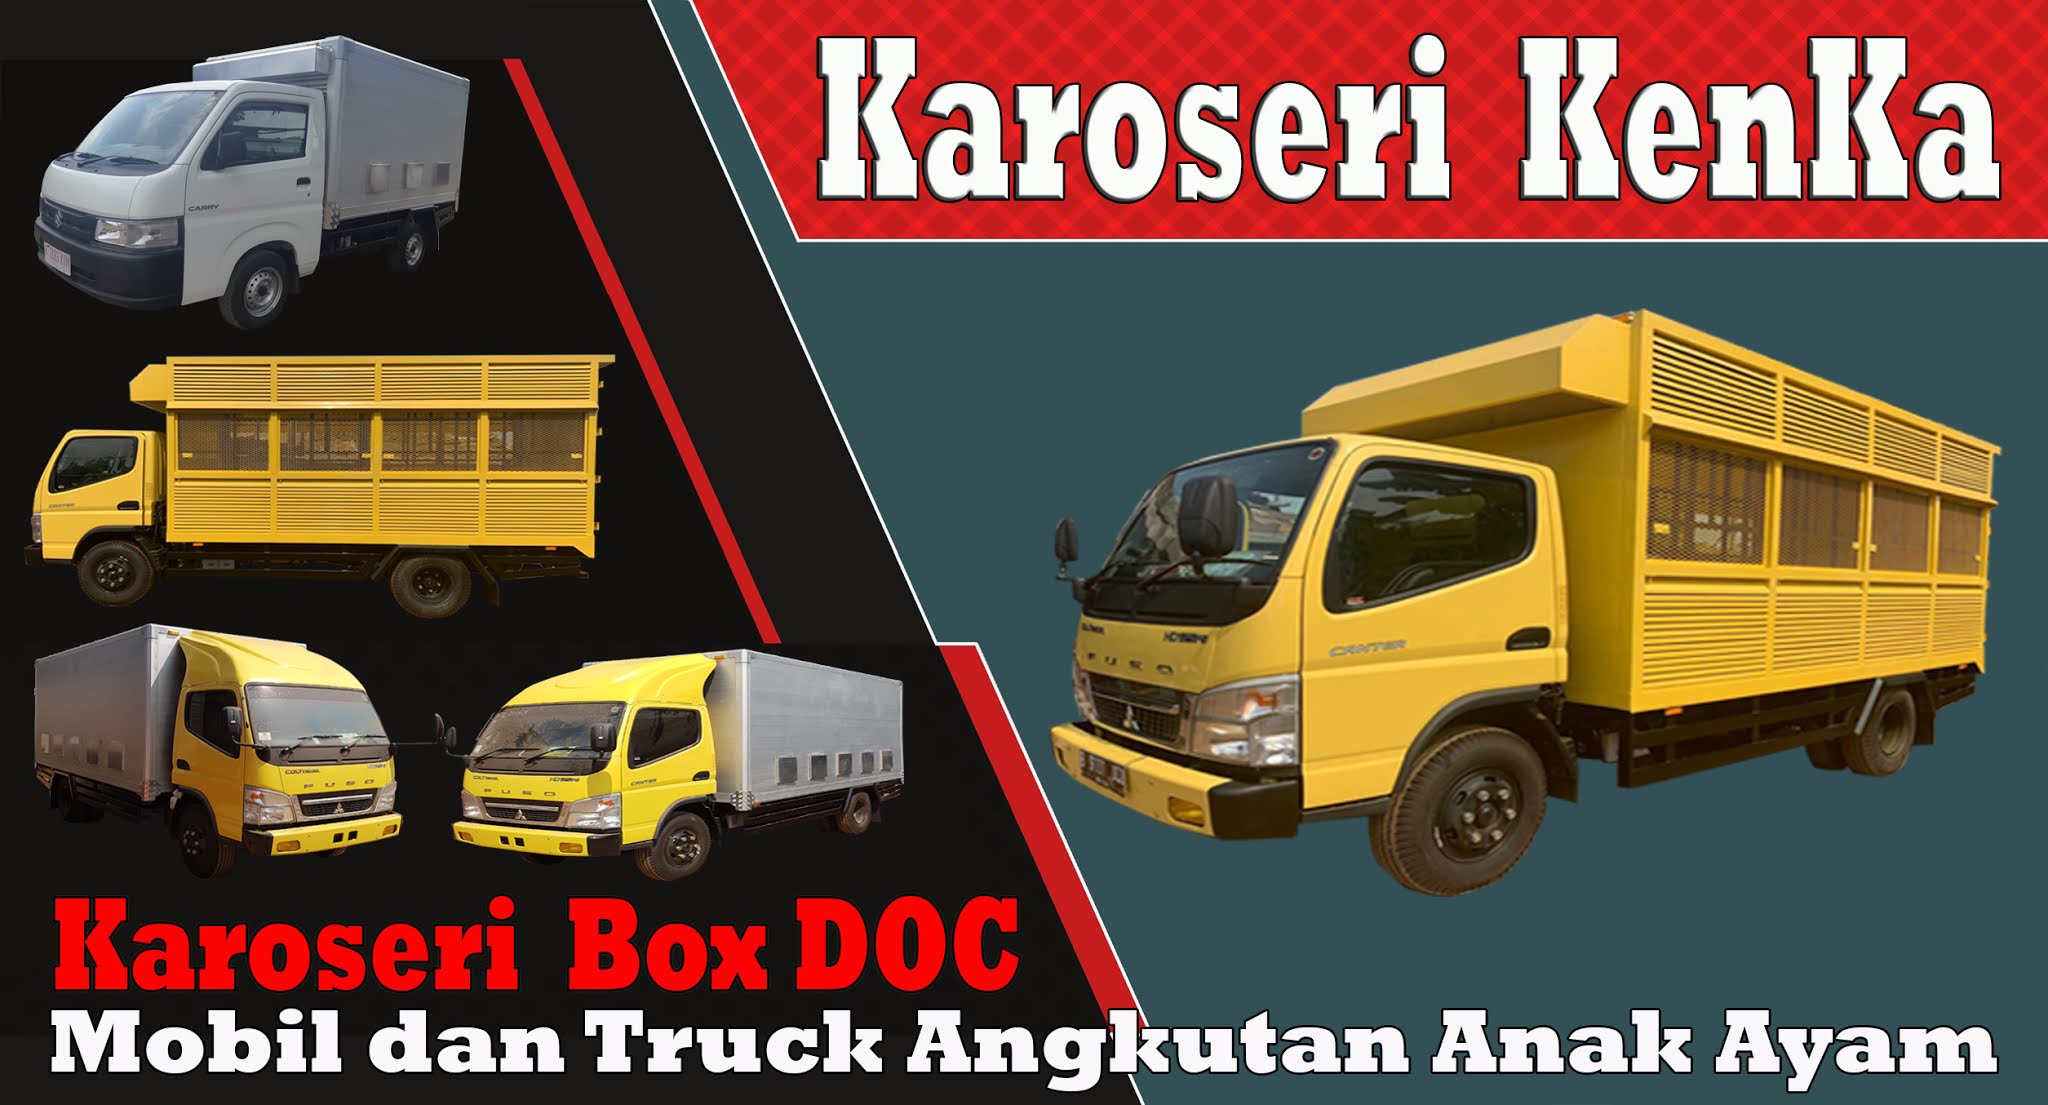 karoseri mobil dan truck box doc kenka self loaders karoseri bekasi